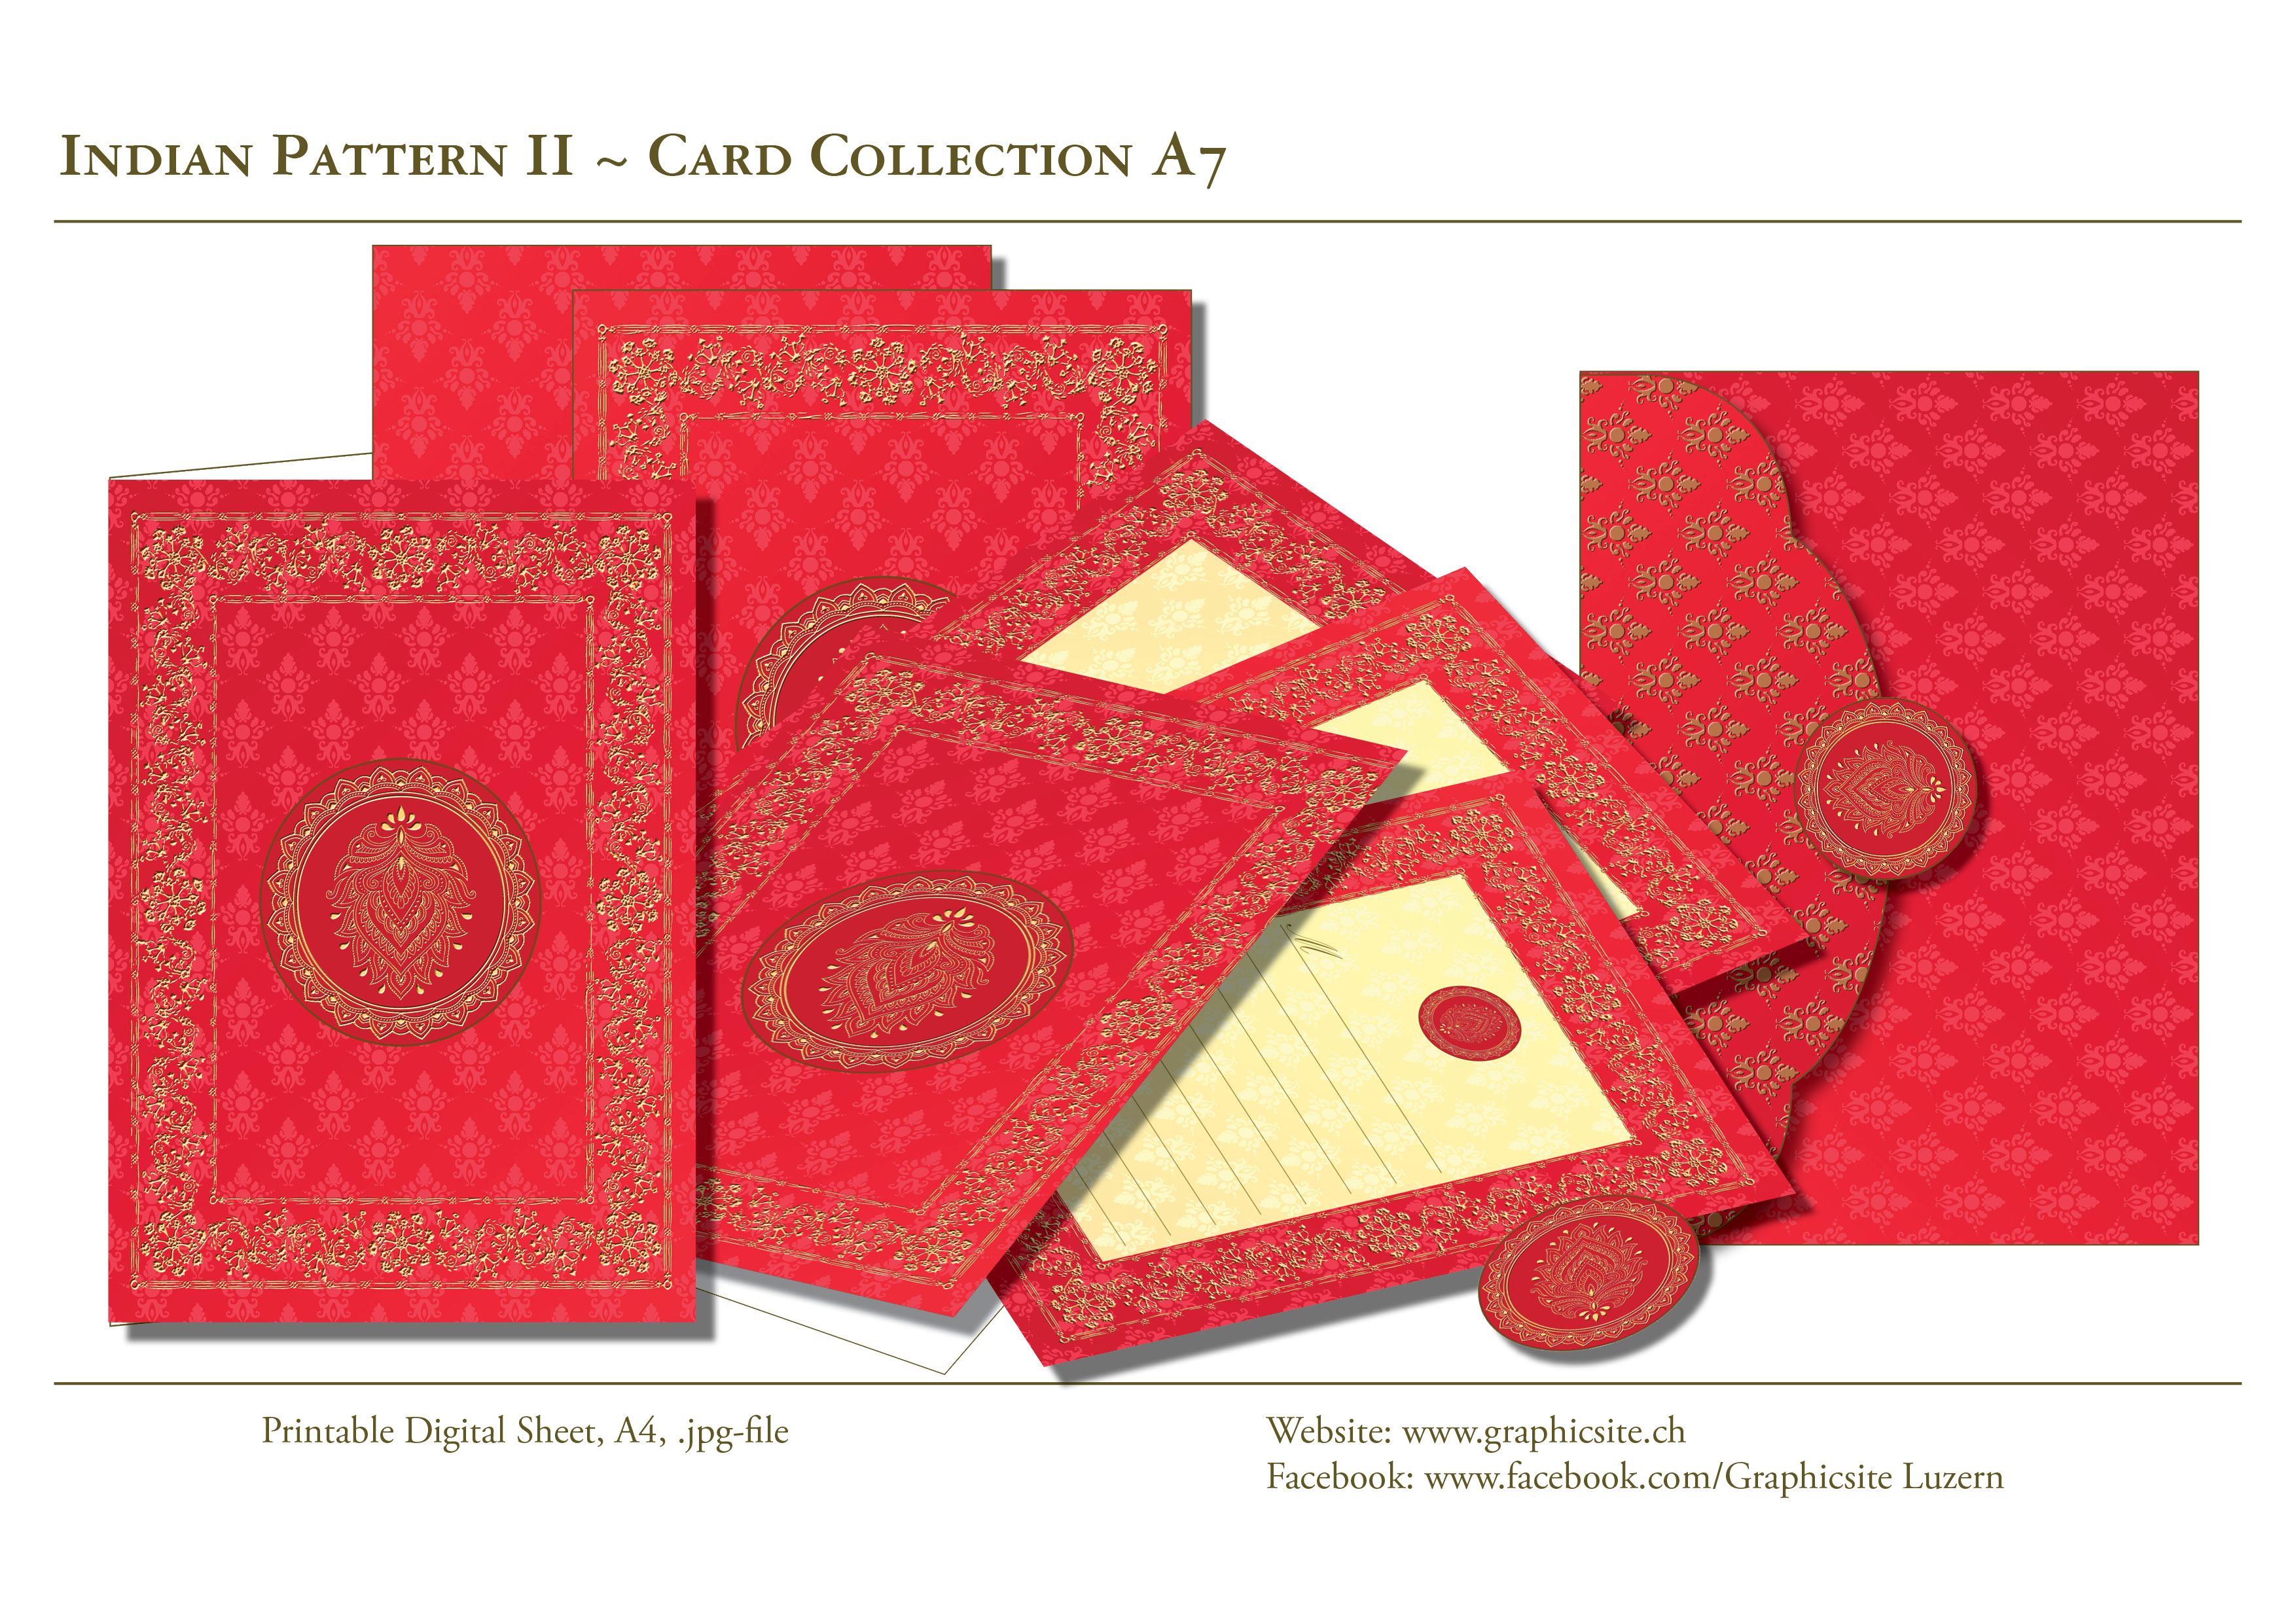 IndianPattern2 - Rot - Hochzeit - Kartenkollektion - Kuvert, Indien,  Yoga, Meditation, druckbare Karten A7, download, Graphic Design Luzern, Grafiker Luzern, Schweiz